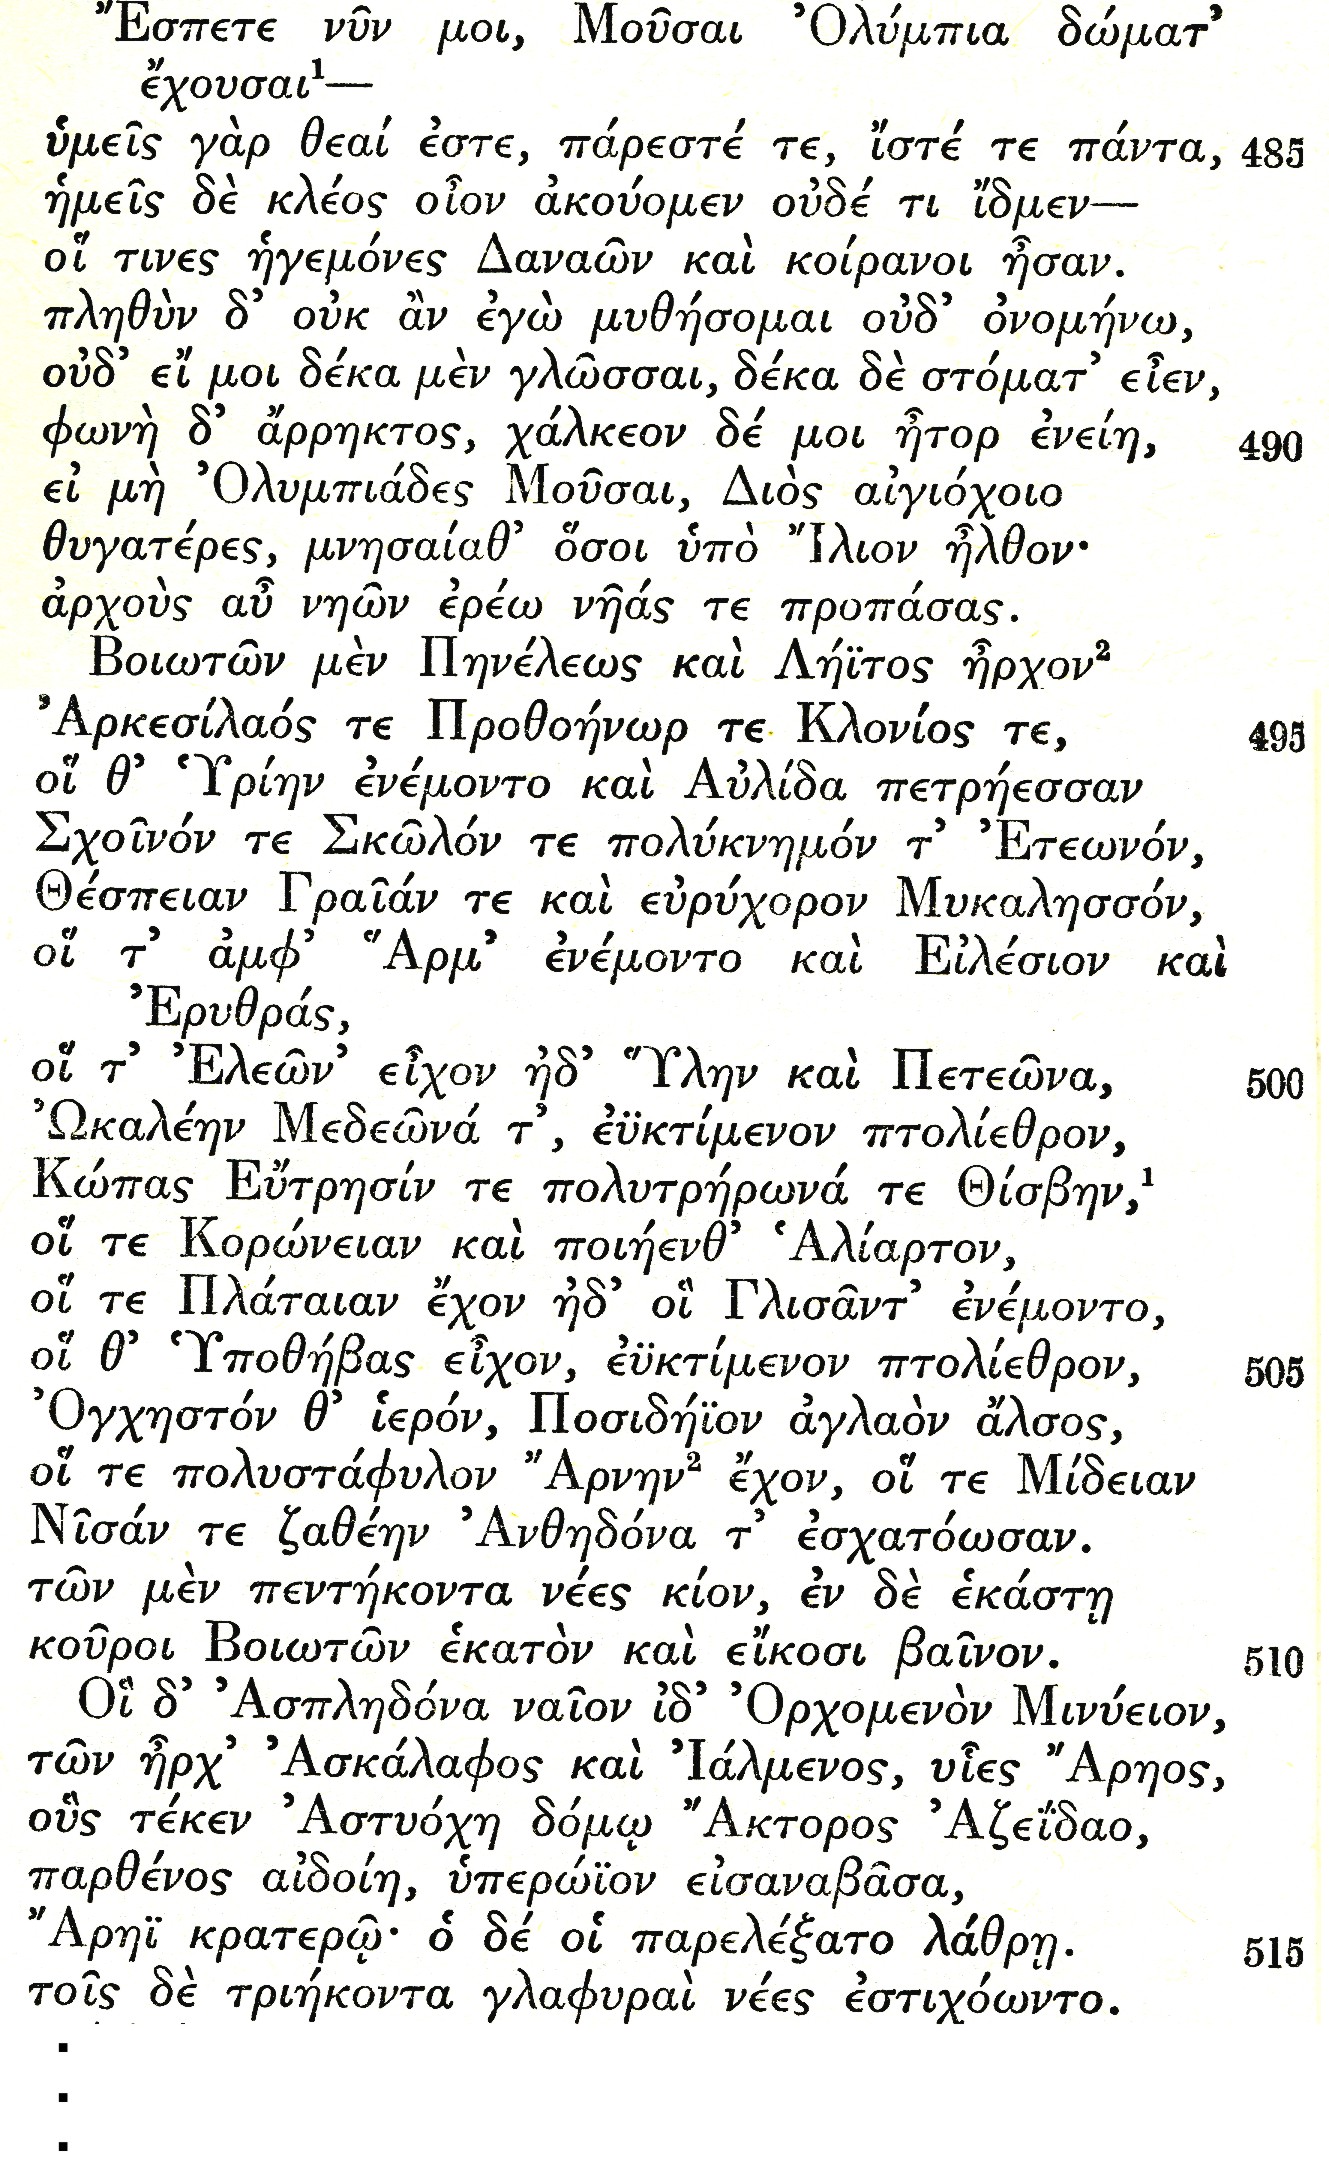 Iliad 2.484-516